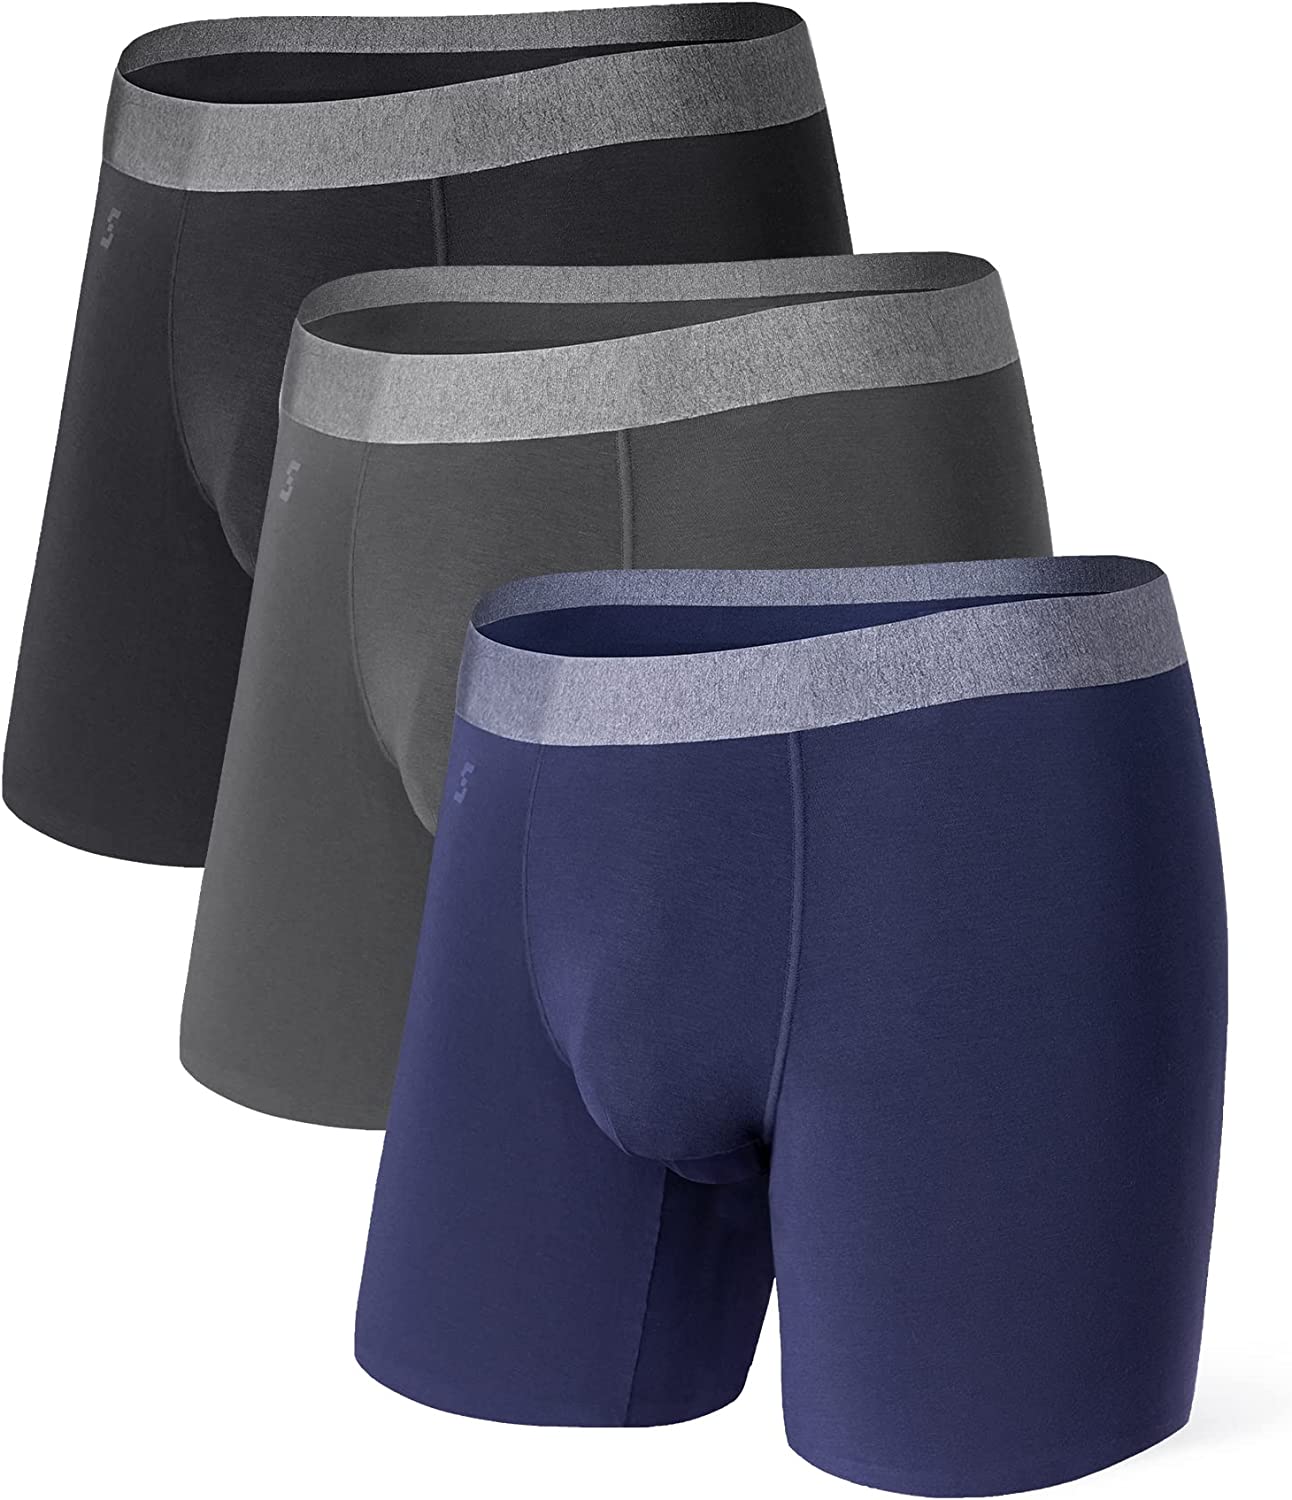 Separatec Bamboo Men's Underwear Classic Soft Mauritius